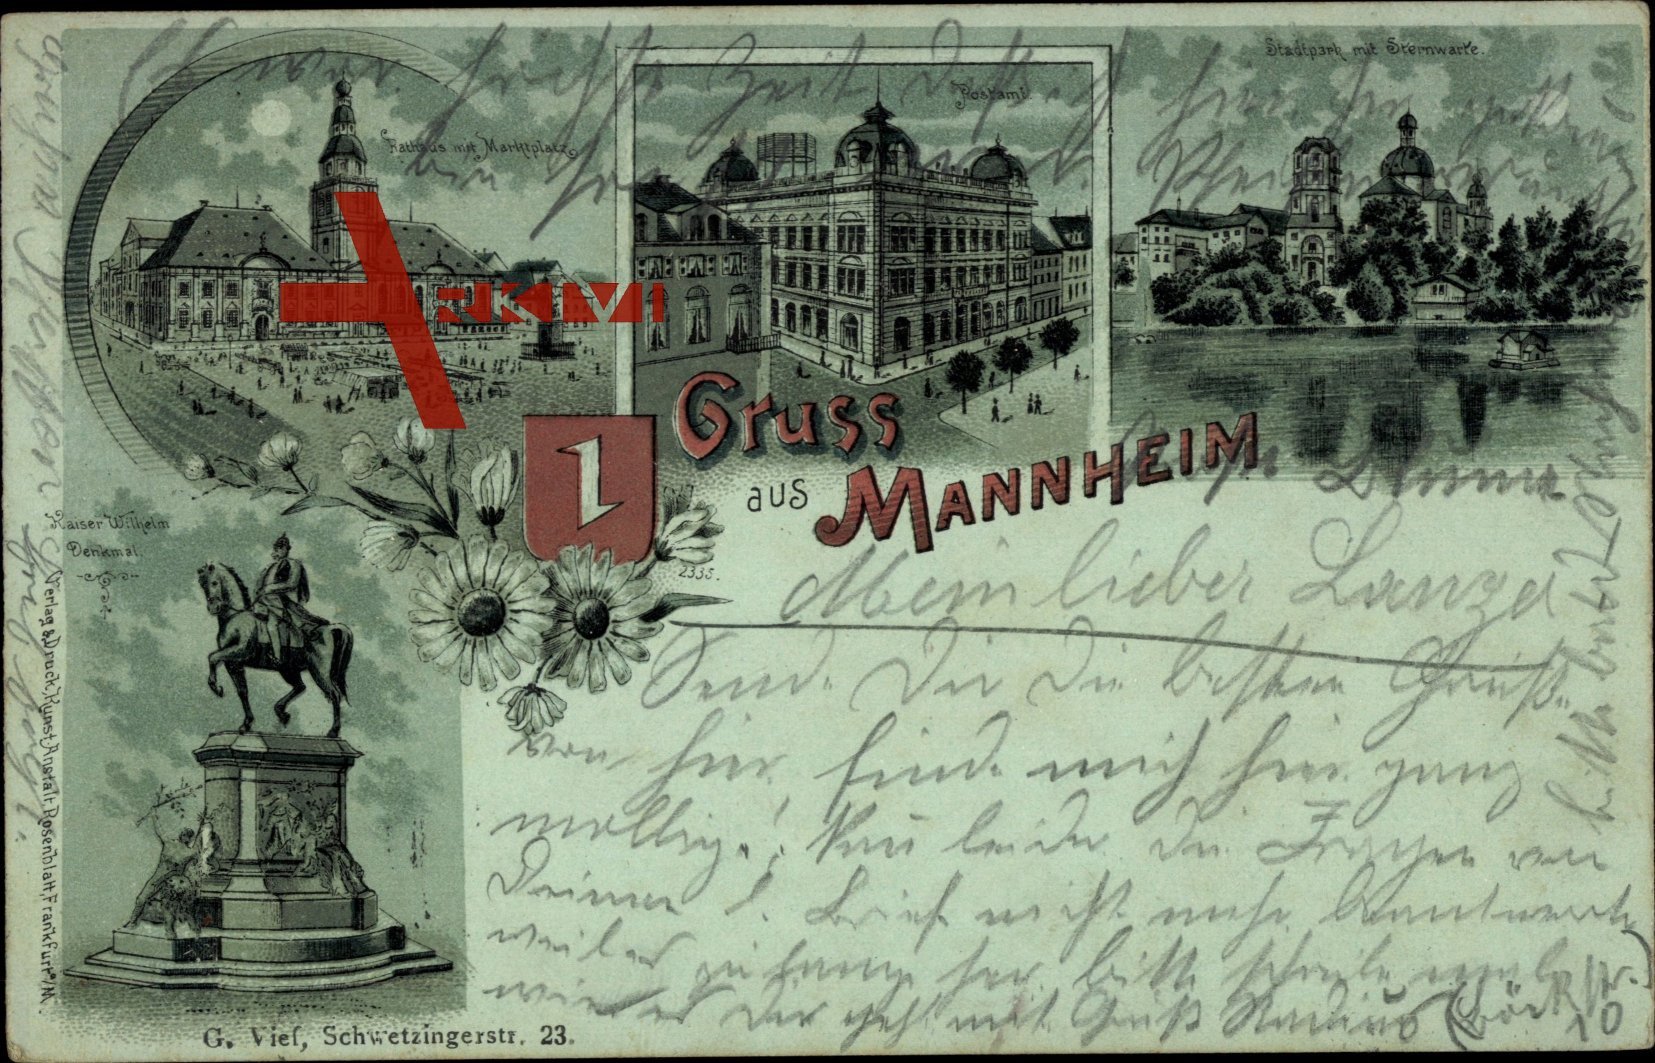 Mondschein Mannheim, Postamt, Stadtpark mit Sternwarte, Rathaus